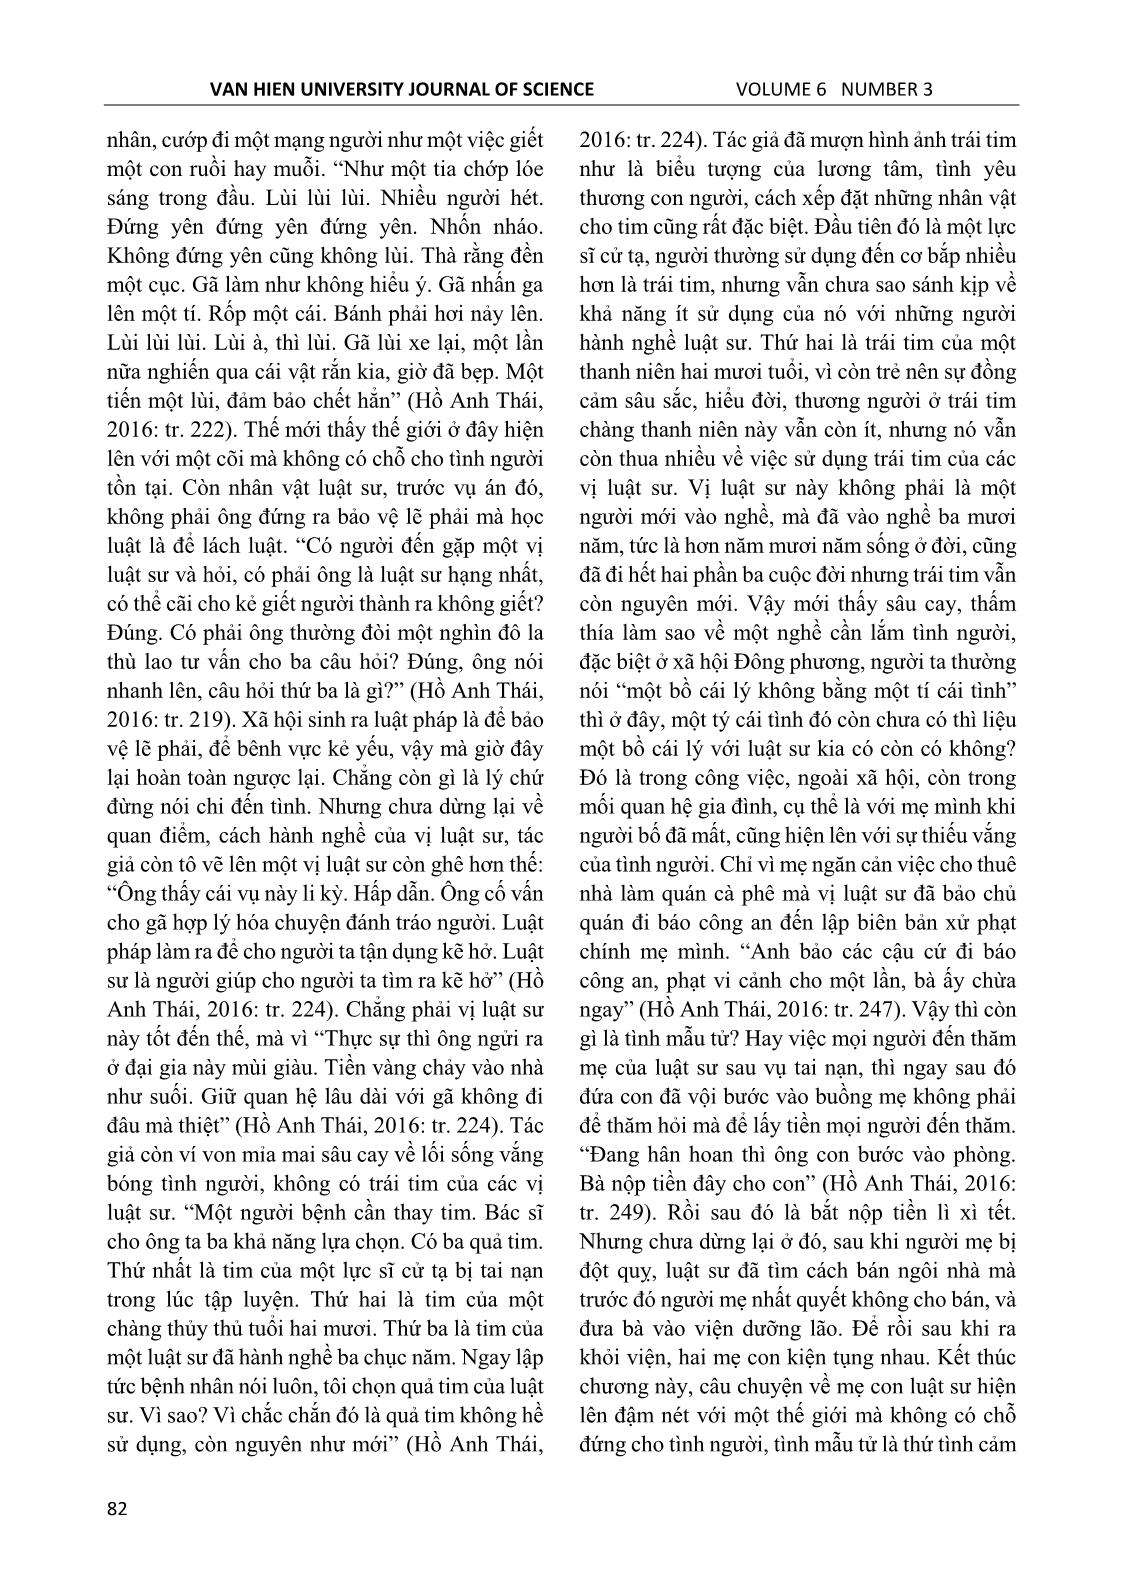 Dấu ấn hiện sinh trong tiểu thuyết Hồ Anh Thái nhìn từ cảm quan hiện thực trang 7